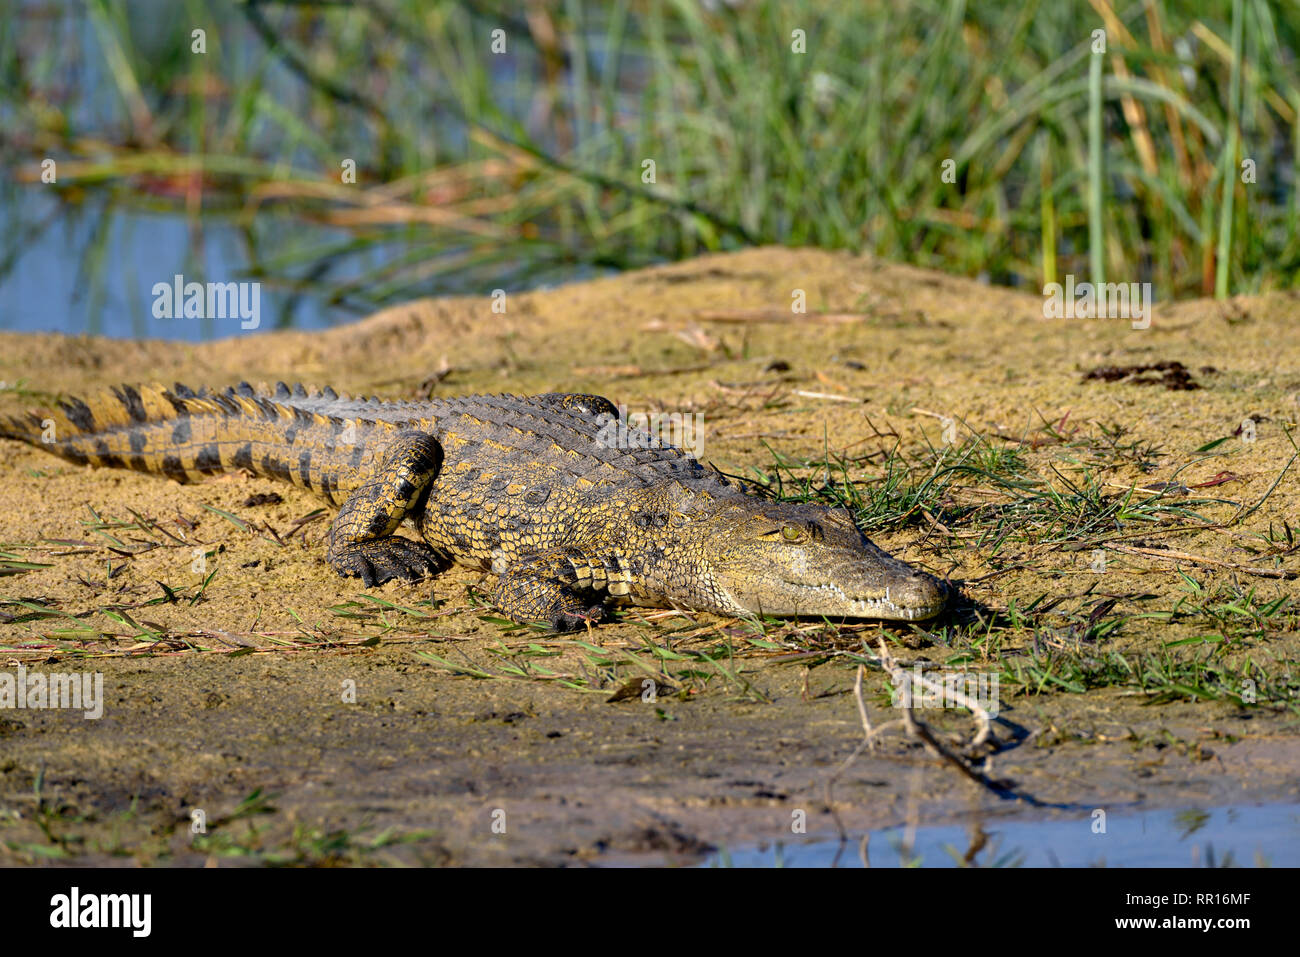 Zoologia, rettile (Reptilia), coccodrillo del Nilo (Crocodylus niloticus cowiei), Gomoti Area di concessione, Oka, Additional-Rights-Clearance-Info-Not-Available Foto Stock